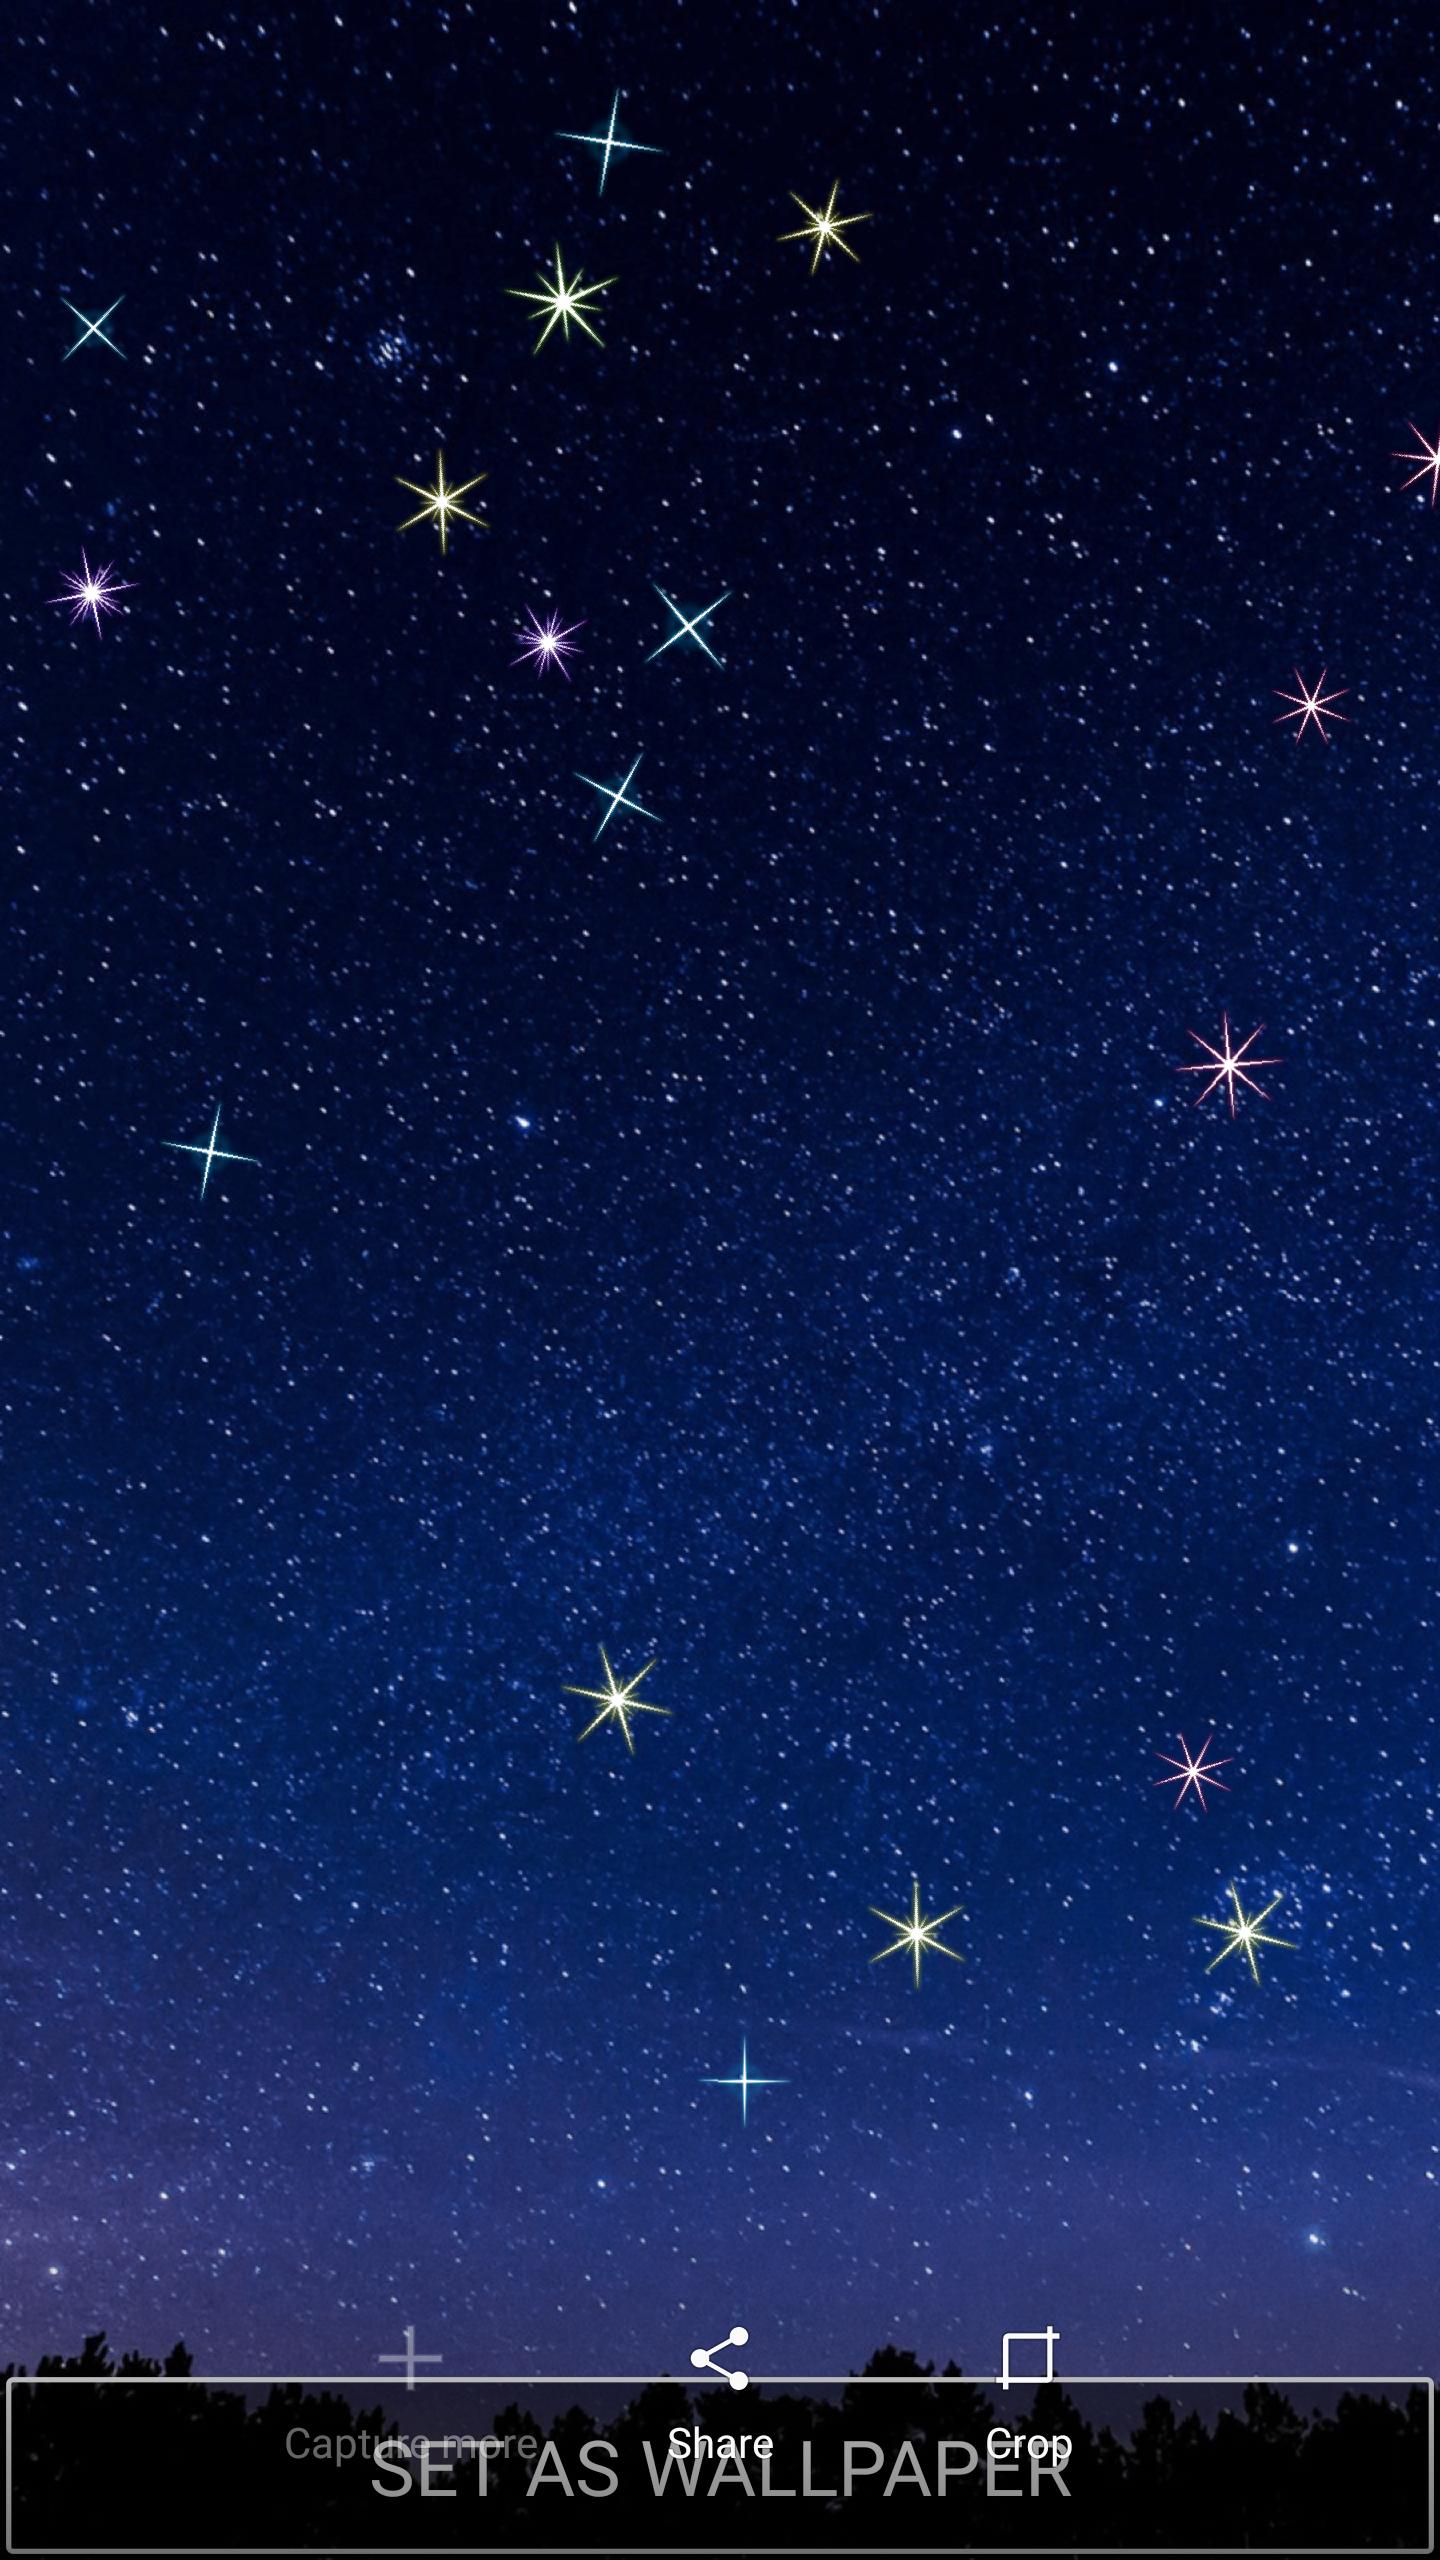 繁星满天的夜空动态壁纸安卓下载 安卓版apk 免费下载